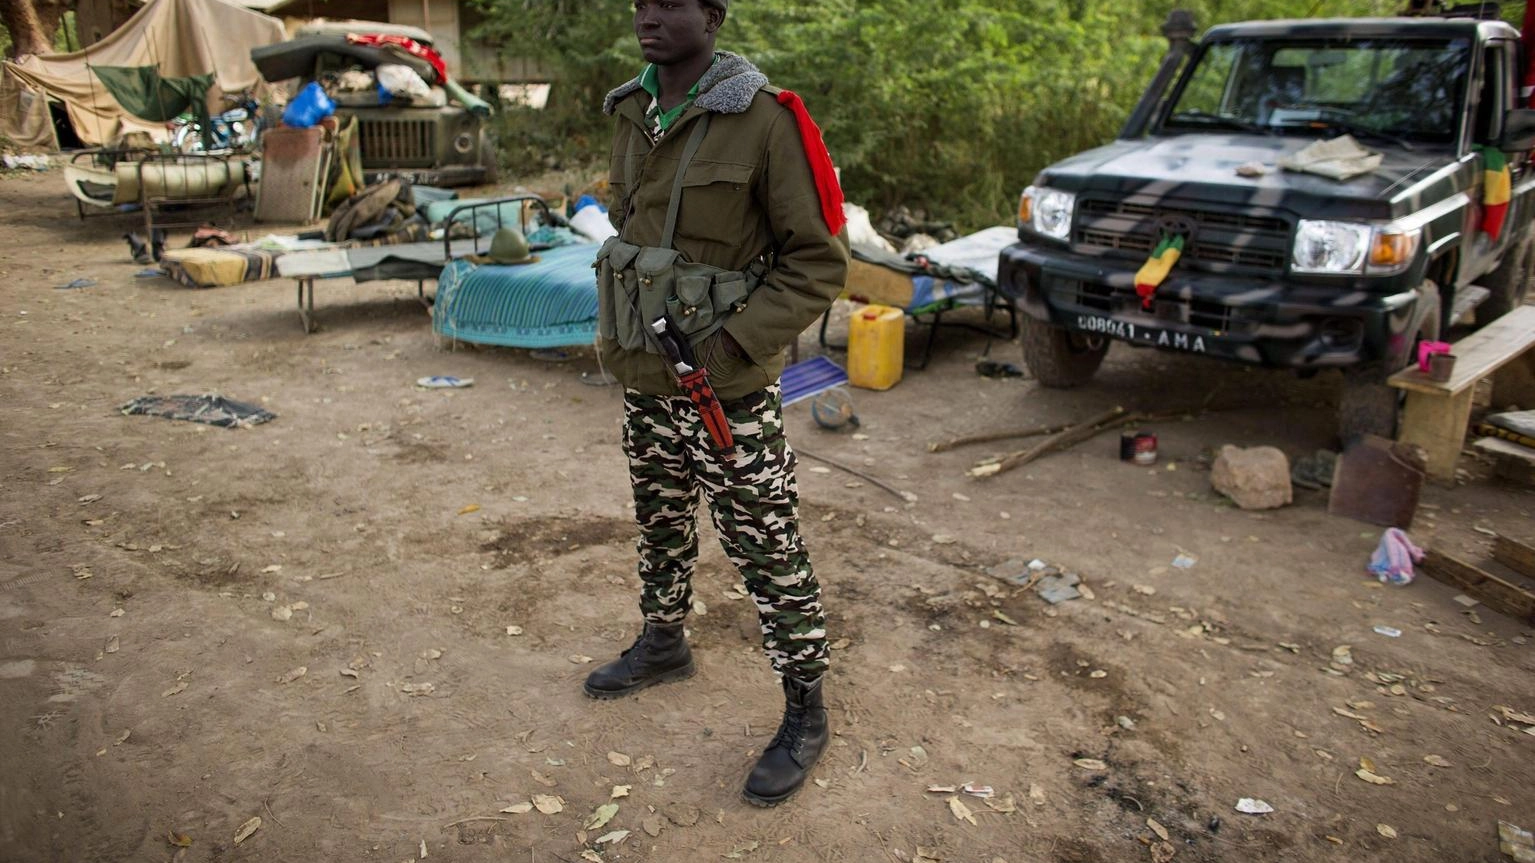 Attacco suicida contro campo militare al nord di Mali